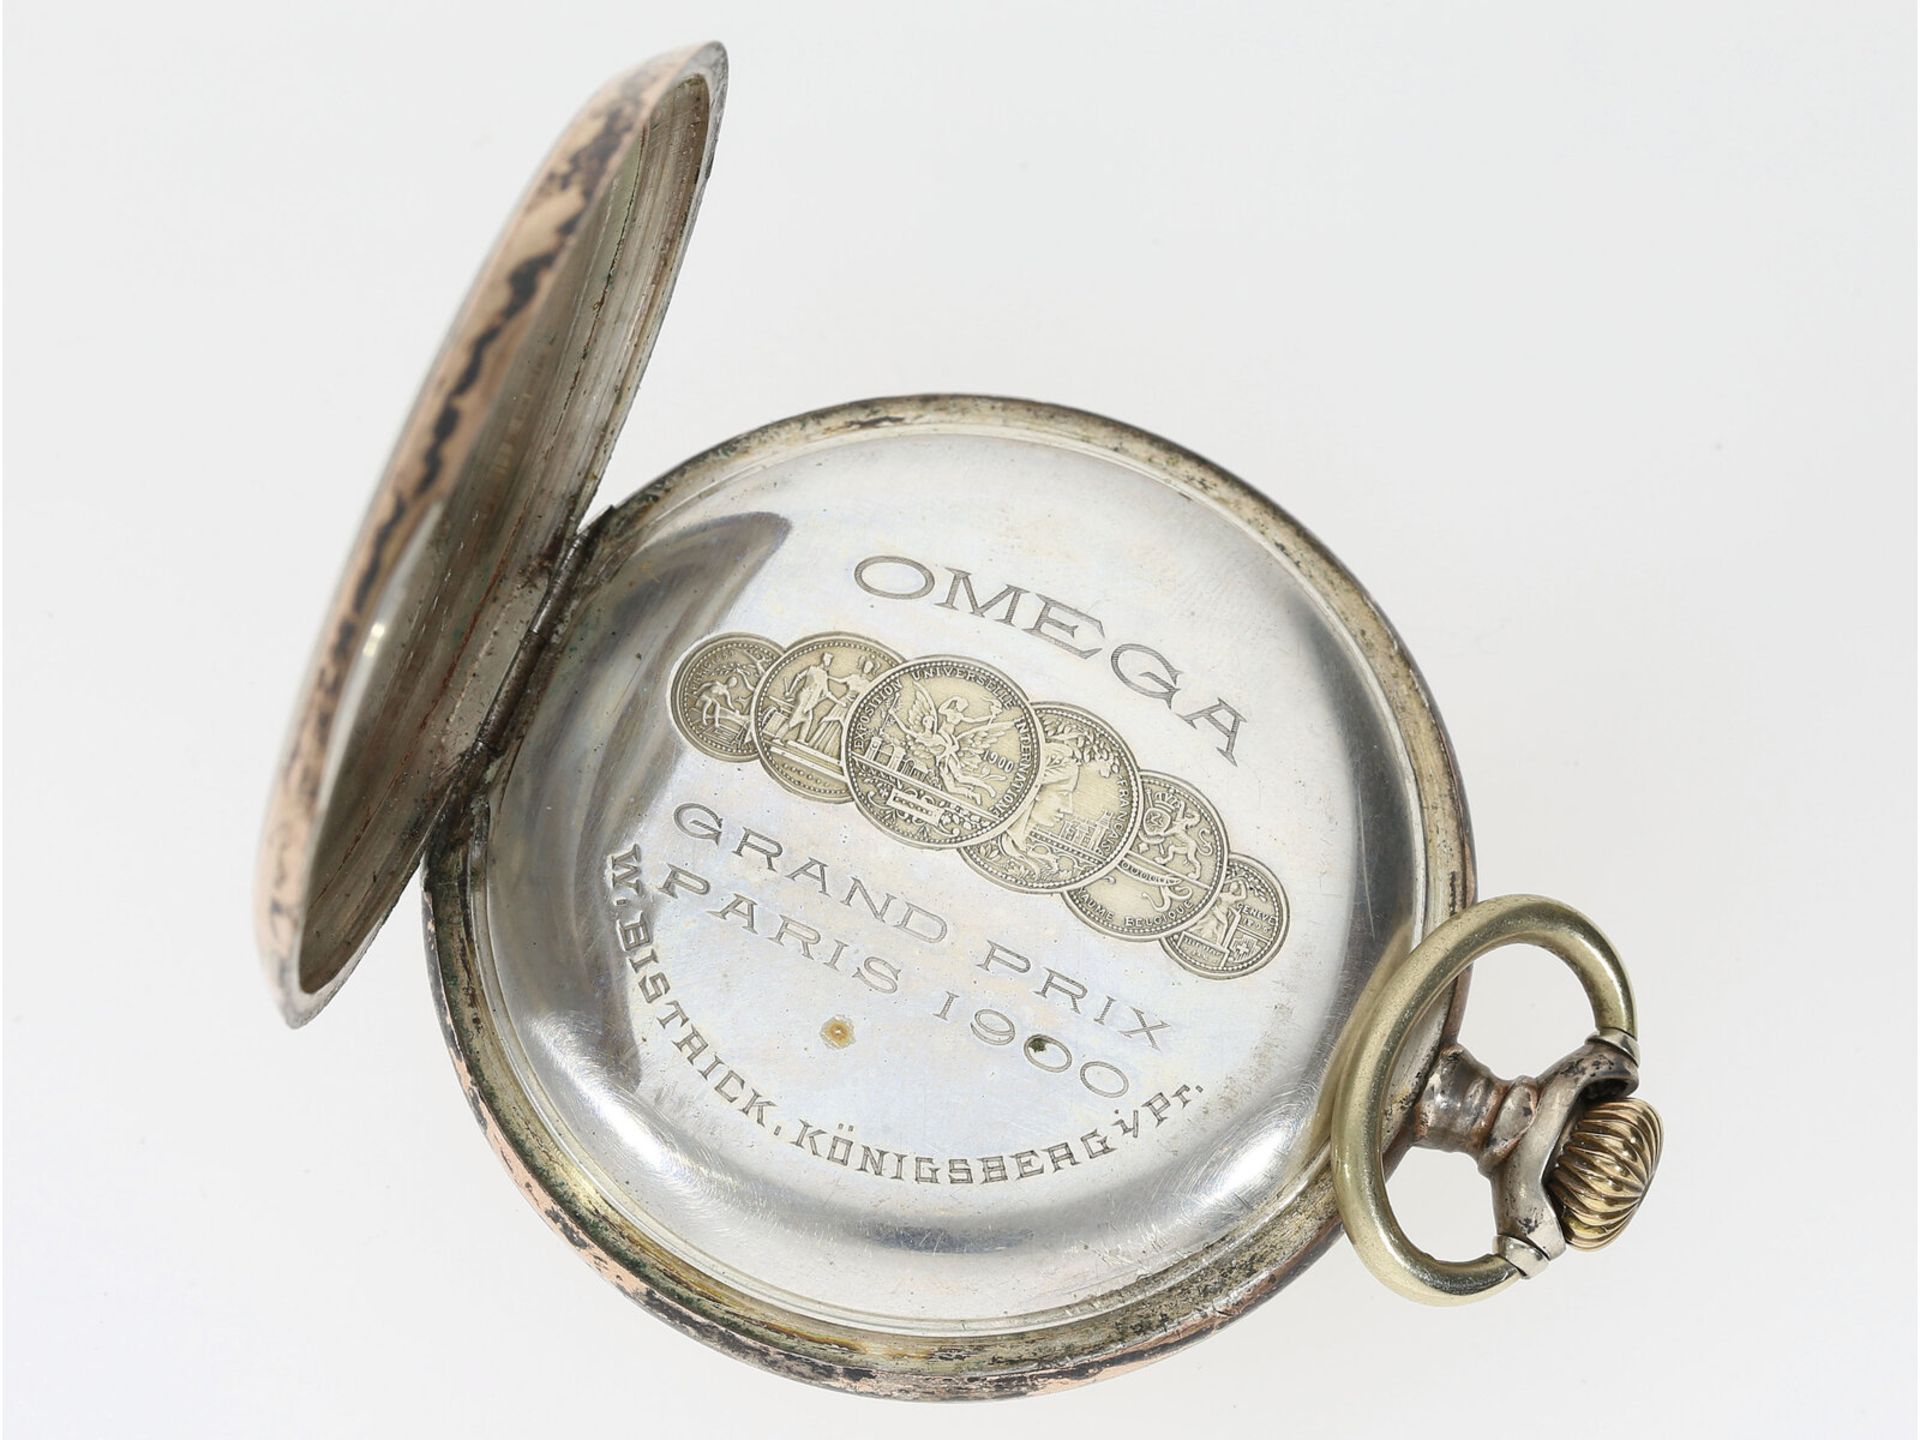 Silberne Omega Taschenuhr mit Uhrenkette und Medaillon, um 1900 - Bild 3 aus 5